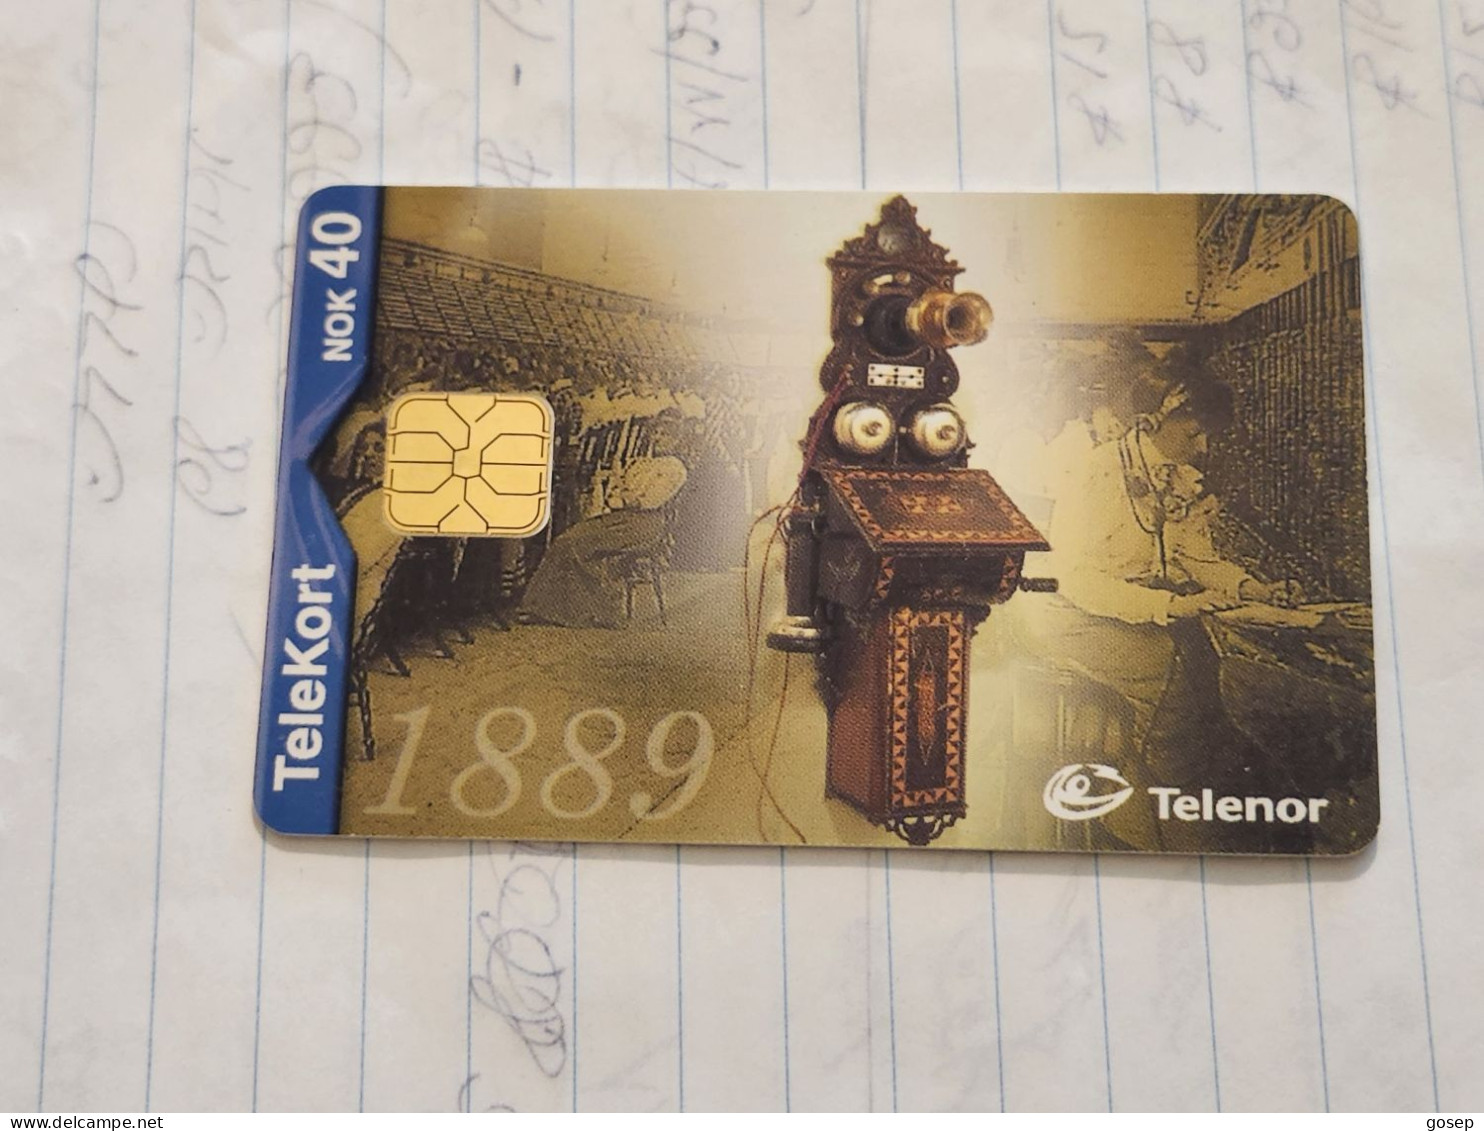 Norway-(N-166)-Telefon 1889-(KR 40)-(75)-(1.02.2000)-used Card+1card Prepiad Free - Norway